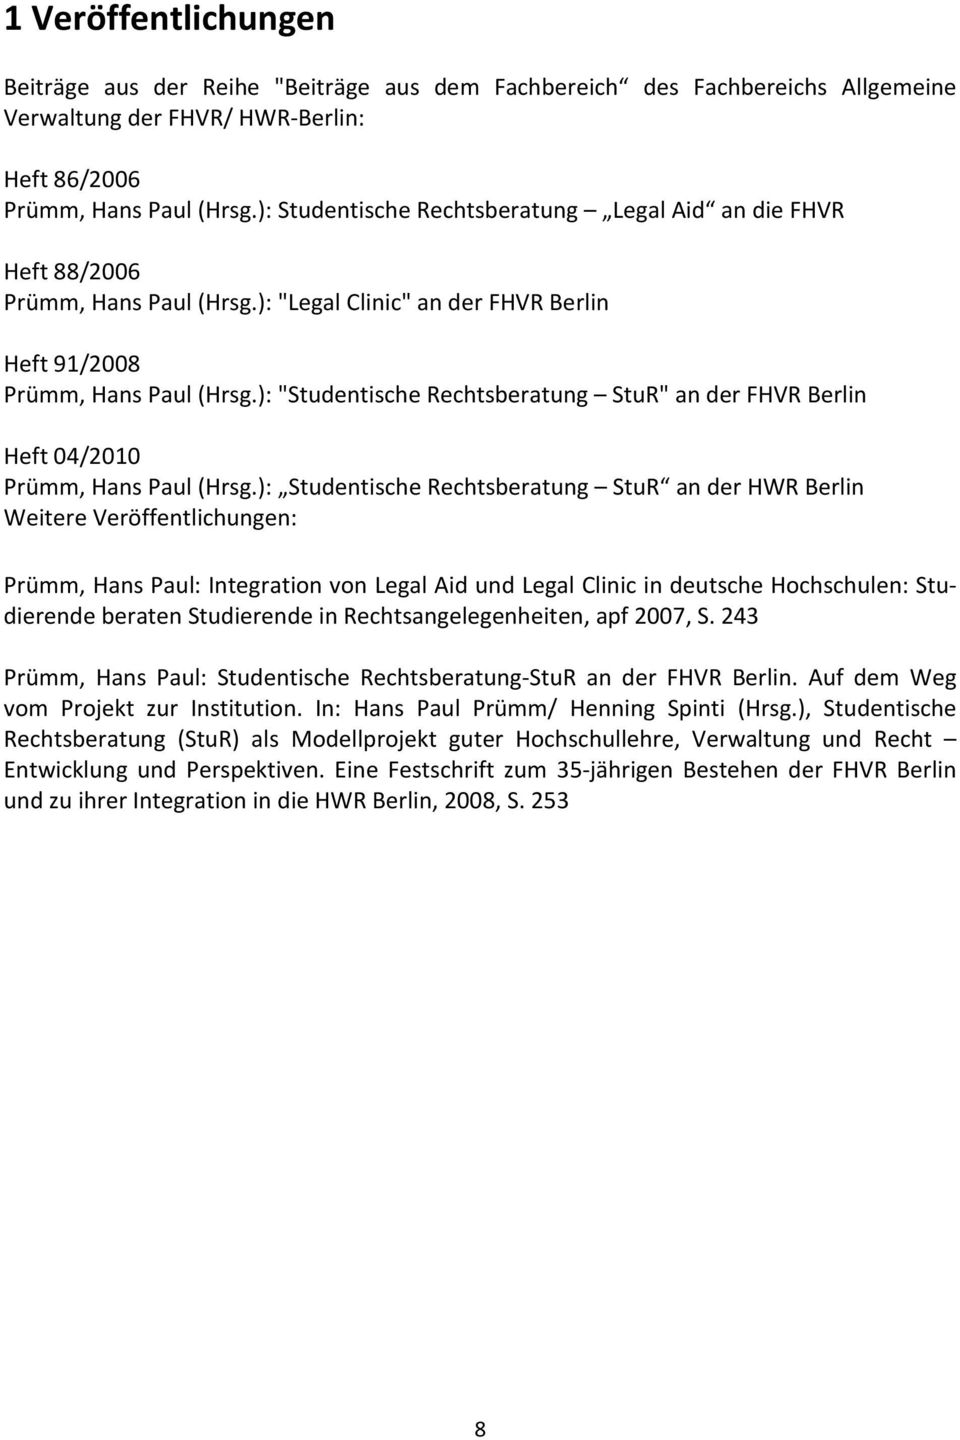 ): "Studentische Rechtsberatung StuR" an der FHVR Berlin Heft 04/2010 Prümm, Hans Paul (Hrsg.